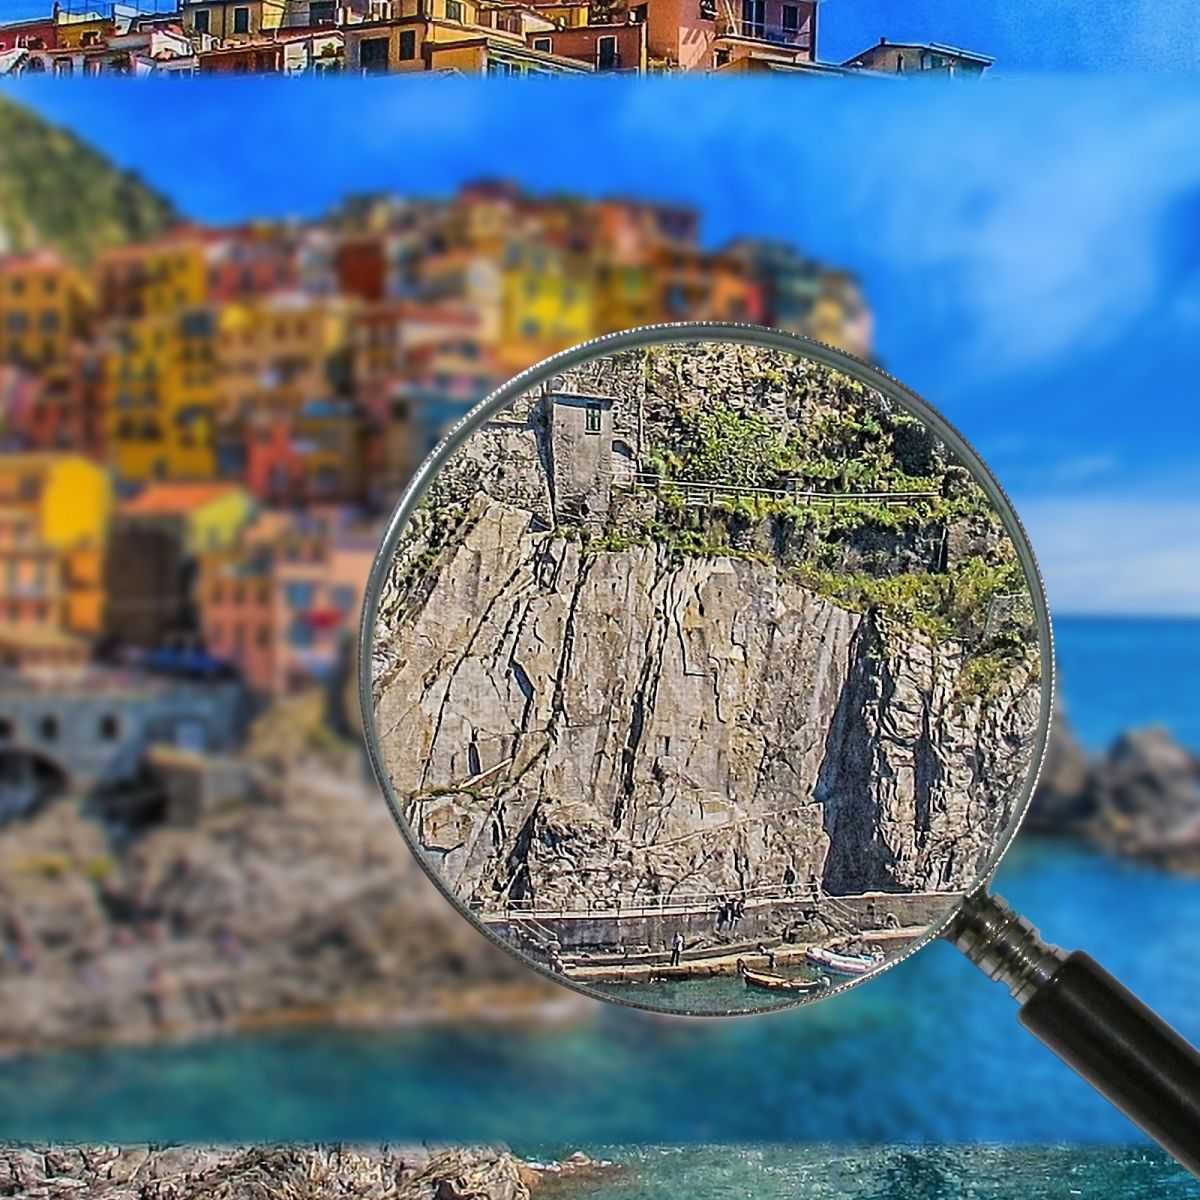 ❤ Città Cinque Terre 4 100x50 quadro stampa su tela ct149